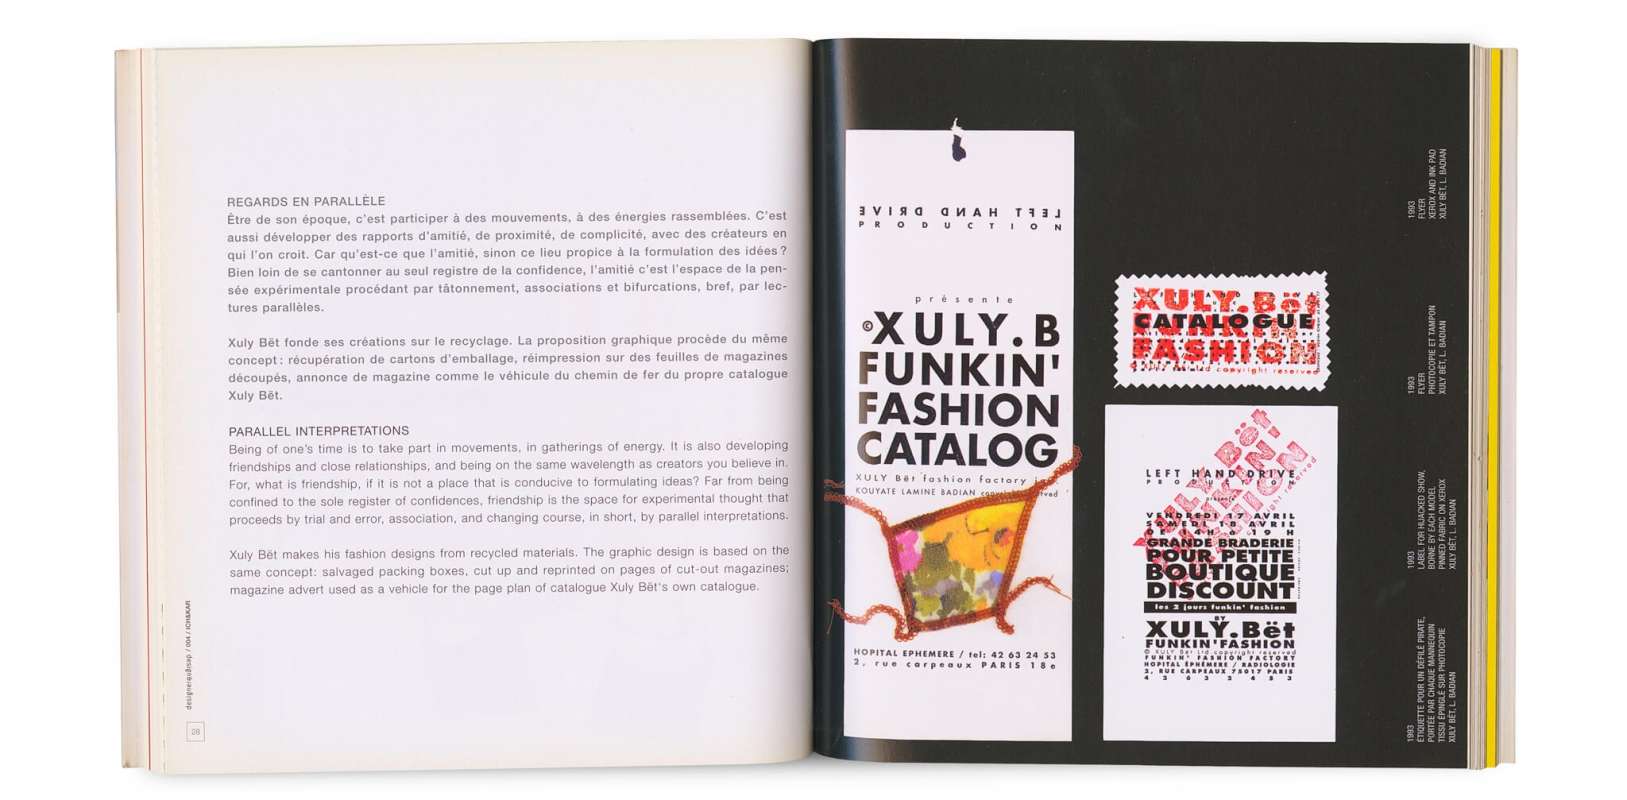 Etiquette pour un défilé pirate de la marque Xuly bet en 1993, portée par chaque mannequin, tissu épinglé par ichetkar.